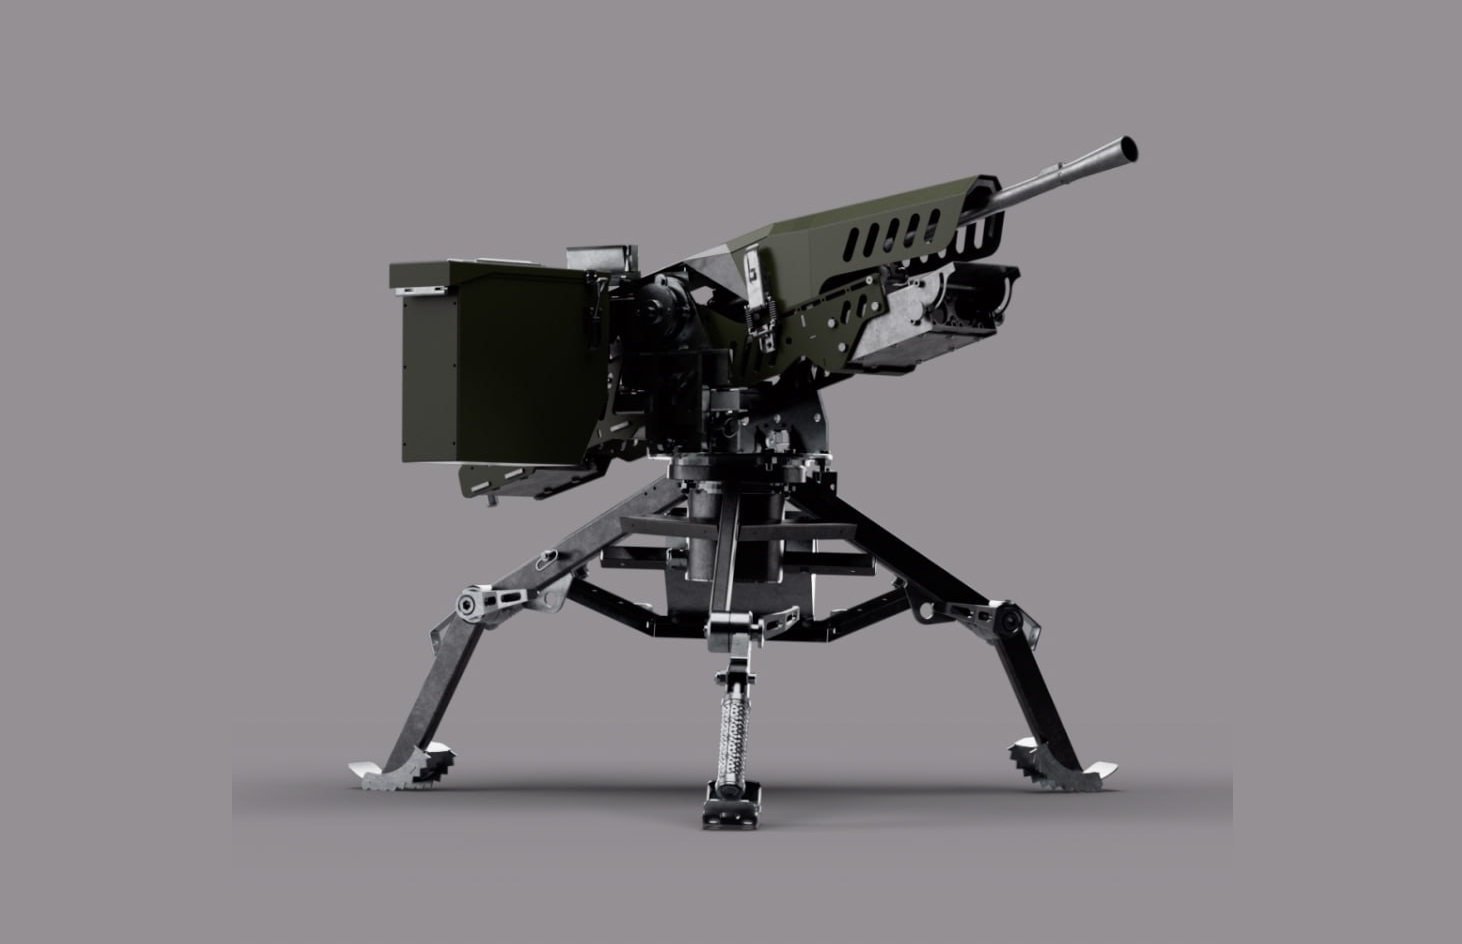 ШаБля — це куленепробивна автоматизована система під кулемети, що допомагає бійцям дистанційно знищувати ворога. Фото: Федоров/Телеграм